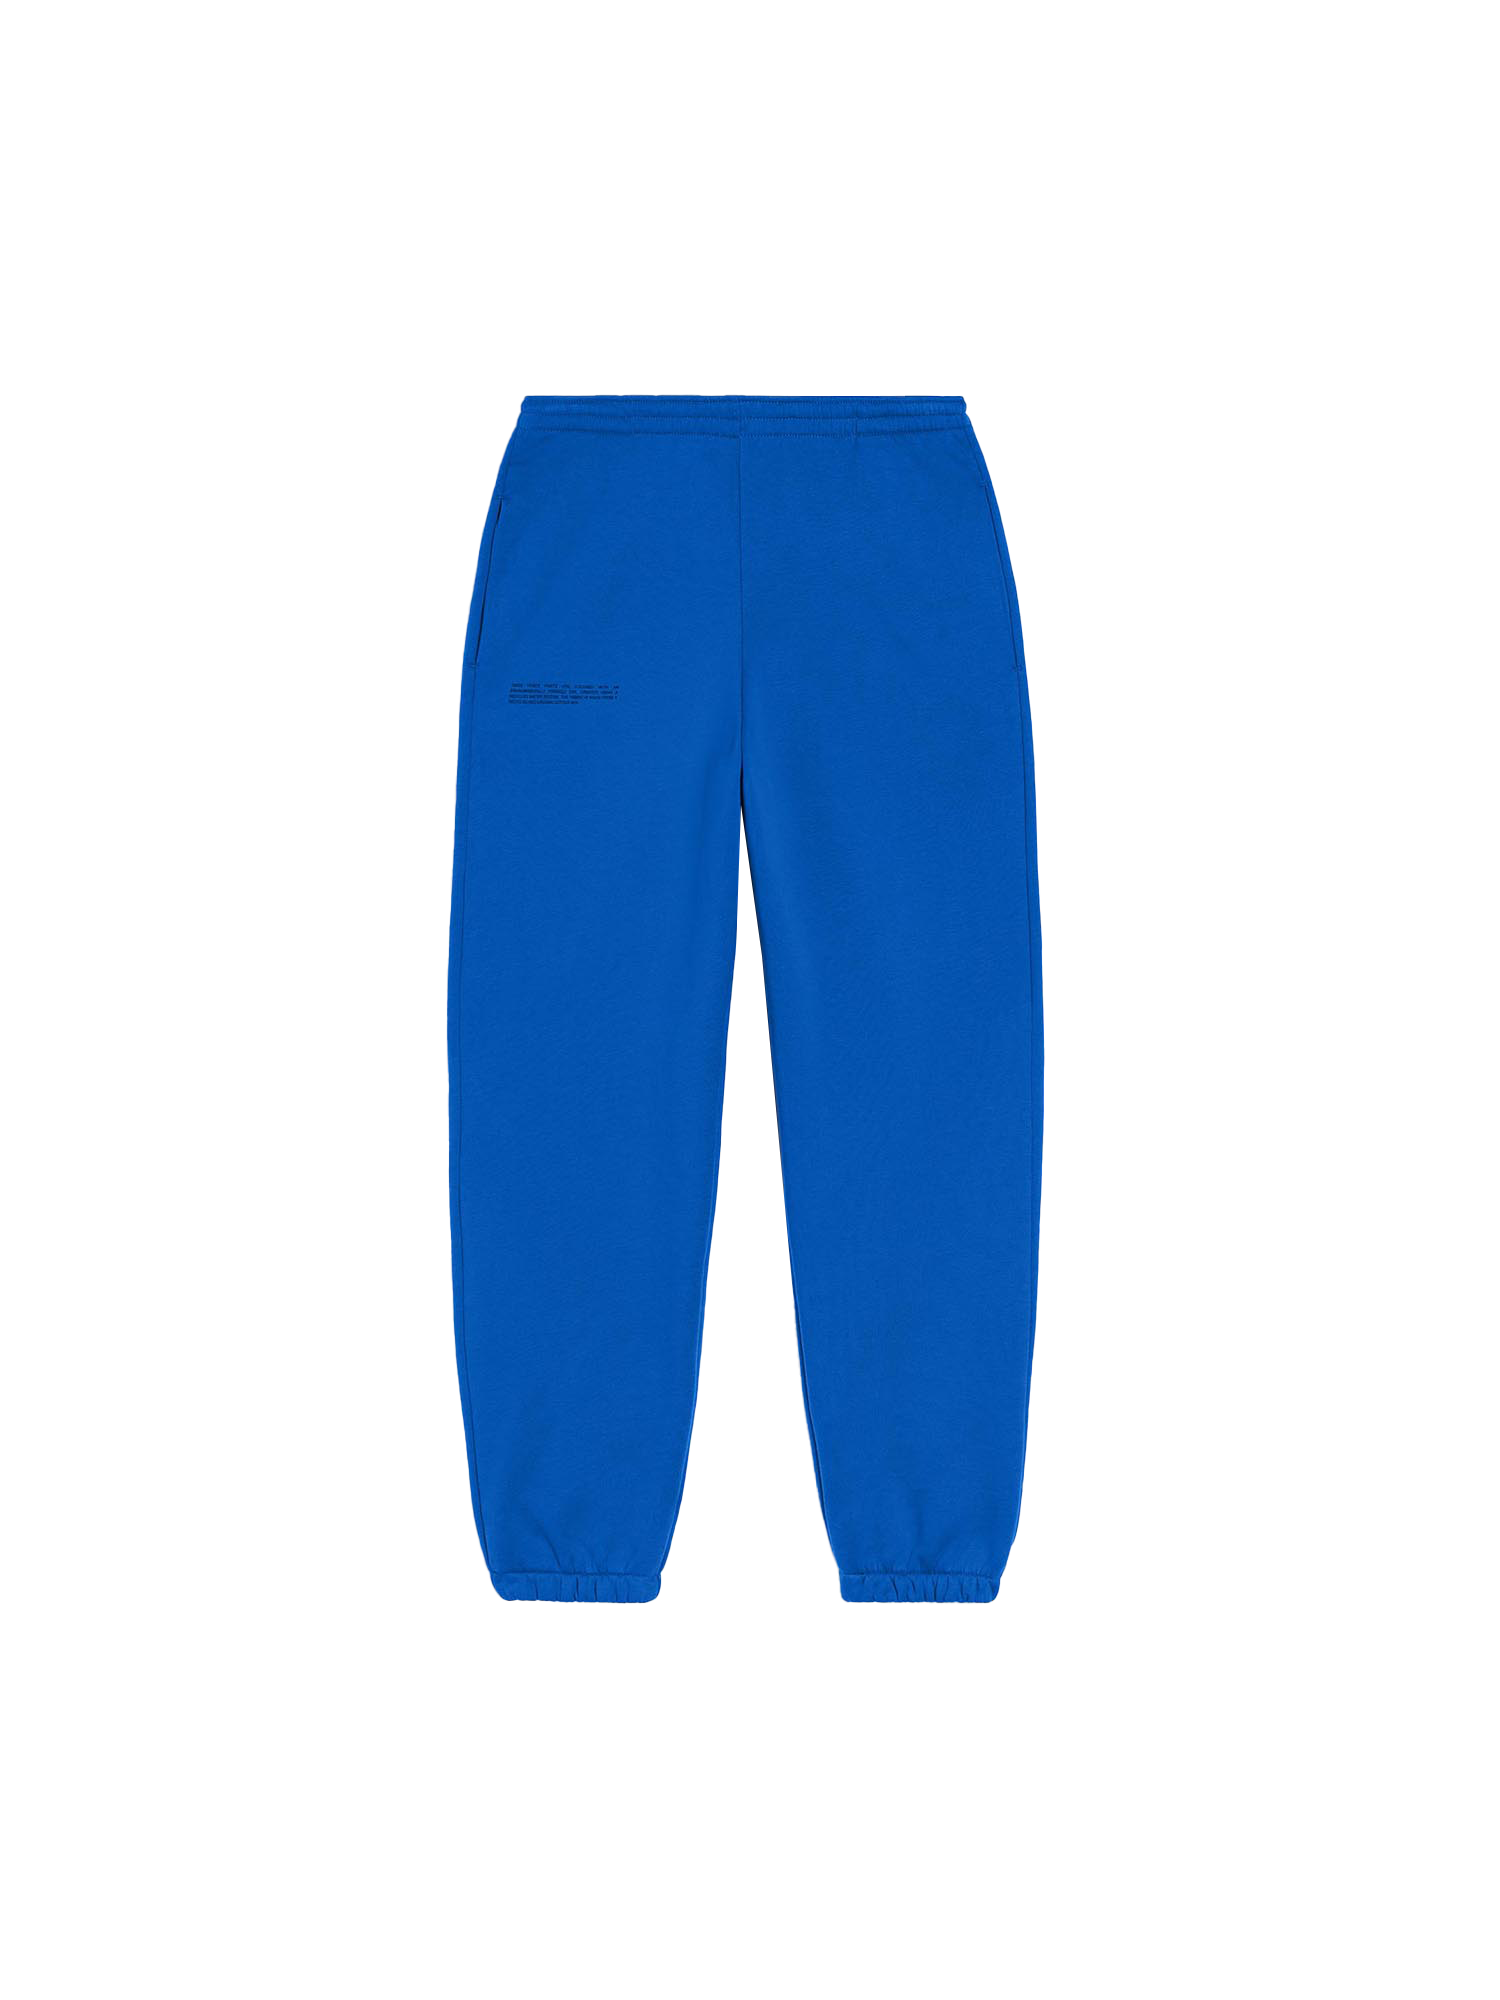 1 Piece, 3 Women: Cobalt Pants  Wear to work dress, Blue pants